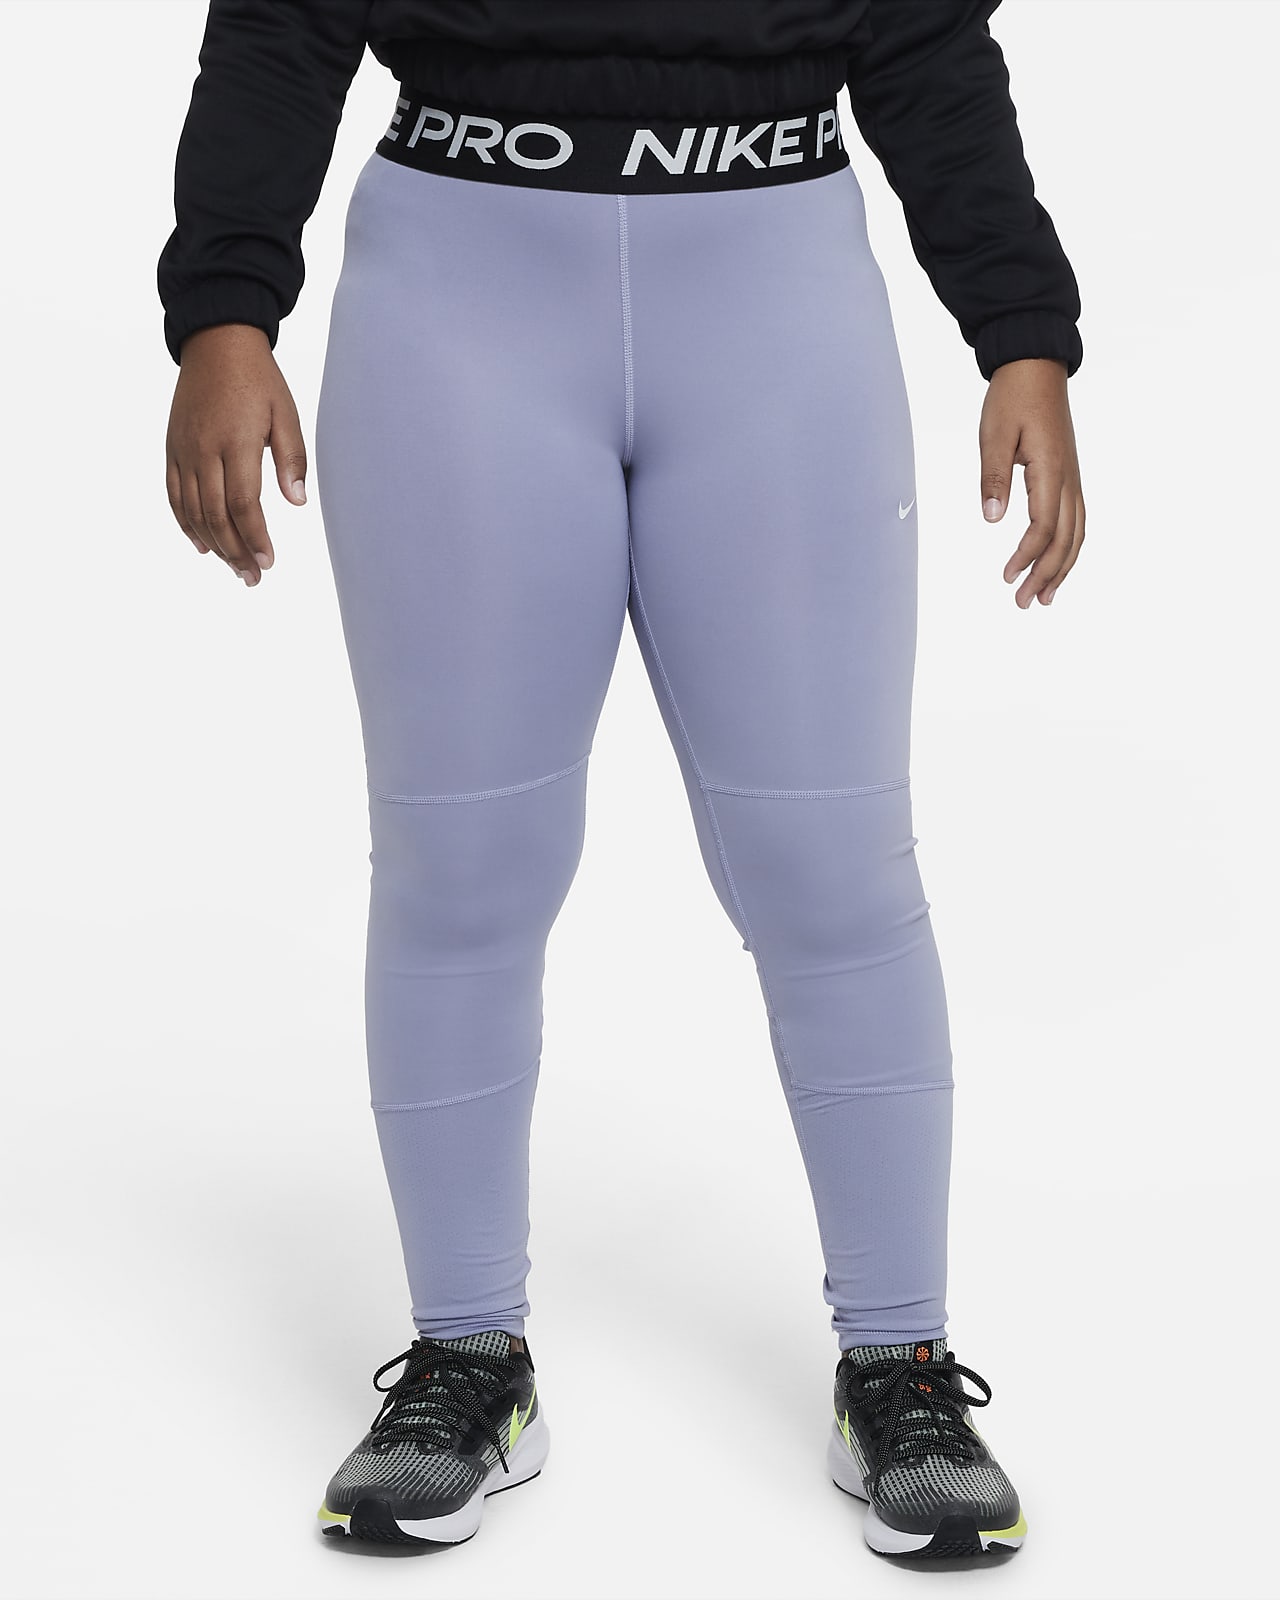 udvikle mode krone Nike Pro-leggings til større børn (piger) (udvidet størrelse). Nike DK